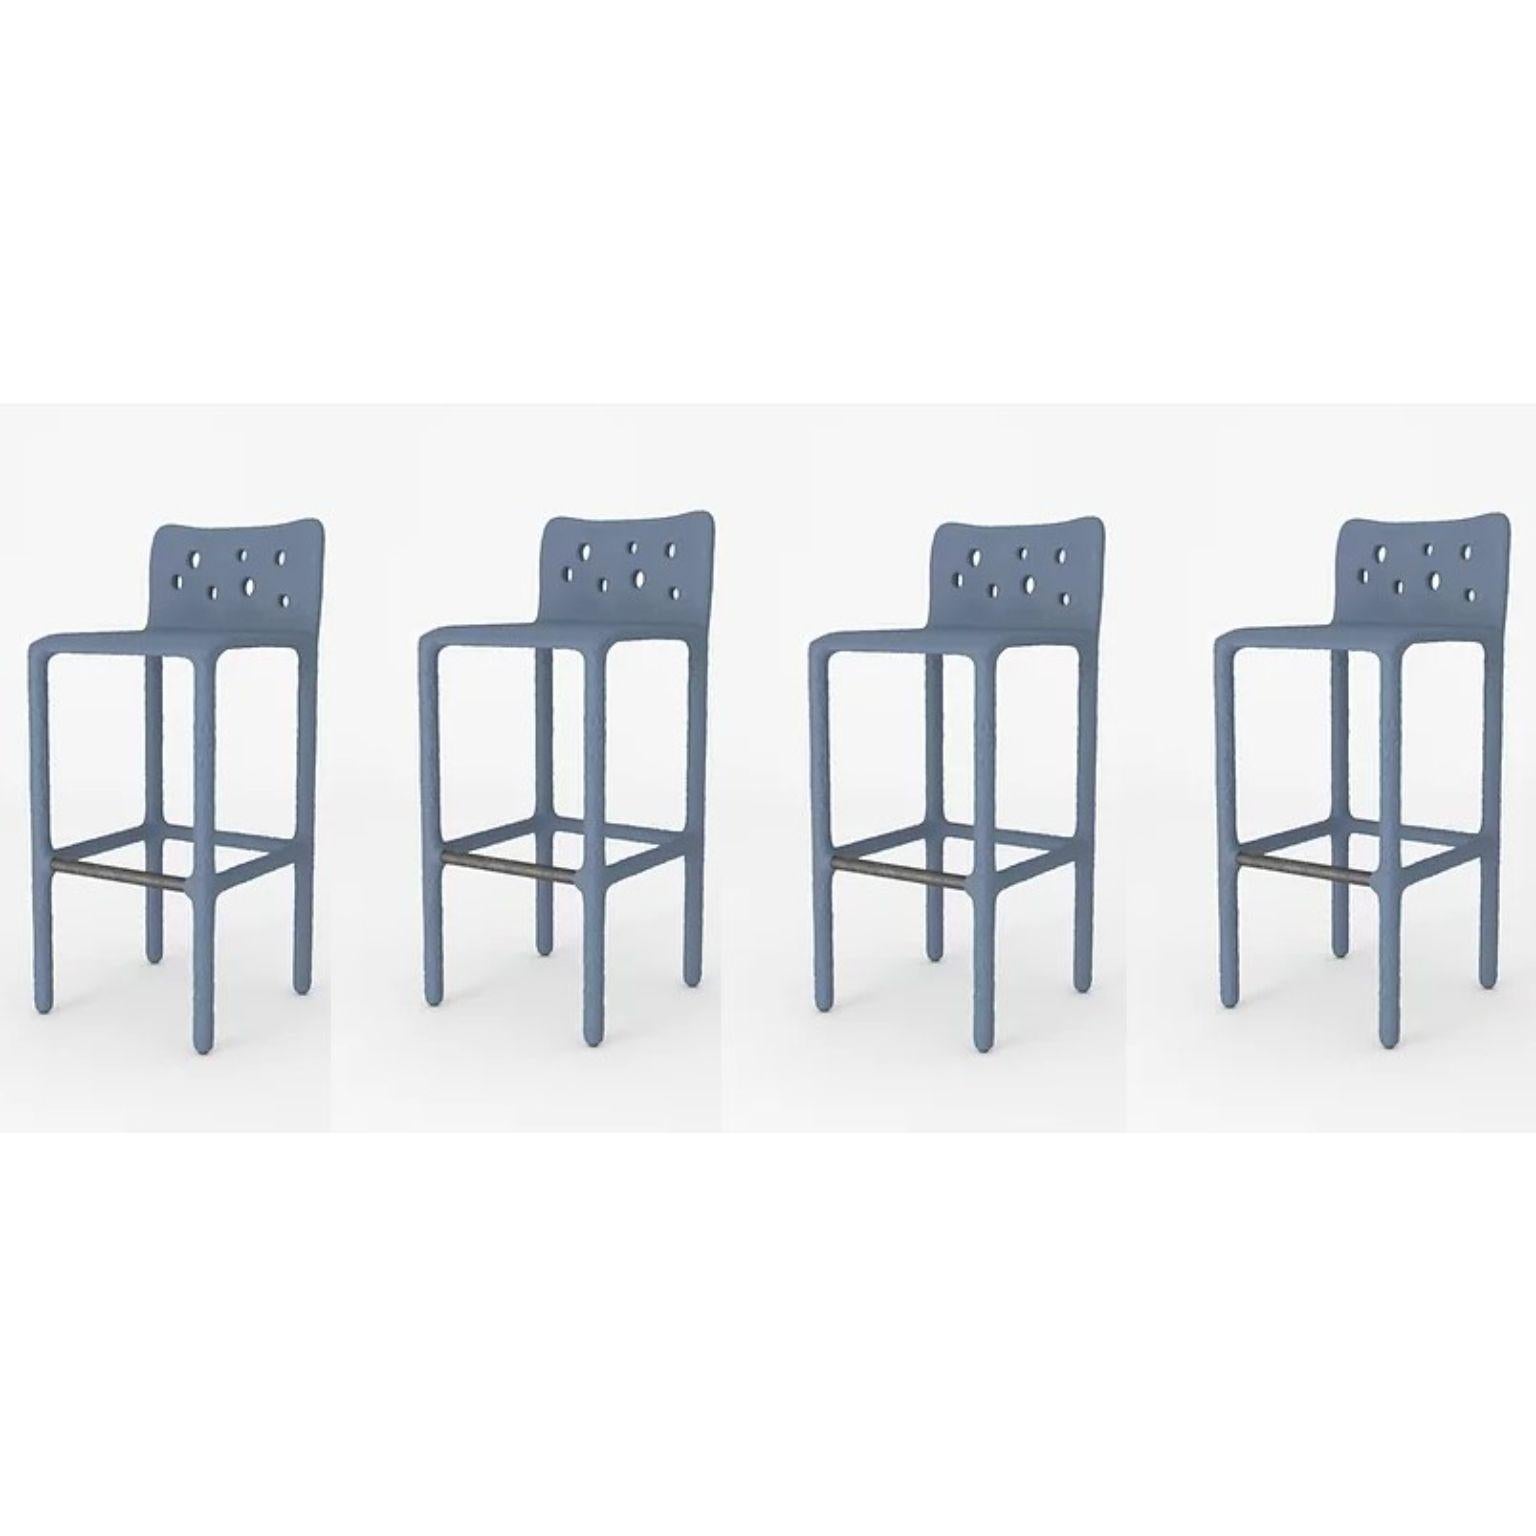 Ensemble de 4 chaises sculptées bleues de Faina.
Design : Victoriya Yakusha
MATERIAL : acier, caoutchouc de lin, biopolymère, cellulose.
Dimensions : Hauteur : 106 x Largeur : 45 x Largeur de la place assise : 49 Hauteur des pieds : 80 cm
Poids : 20